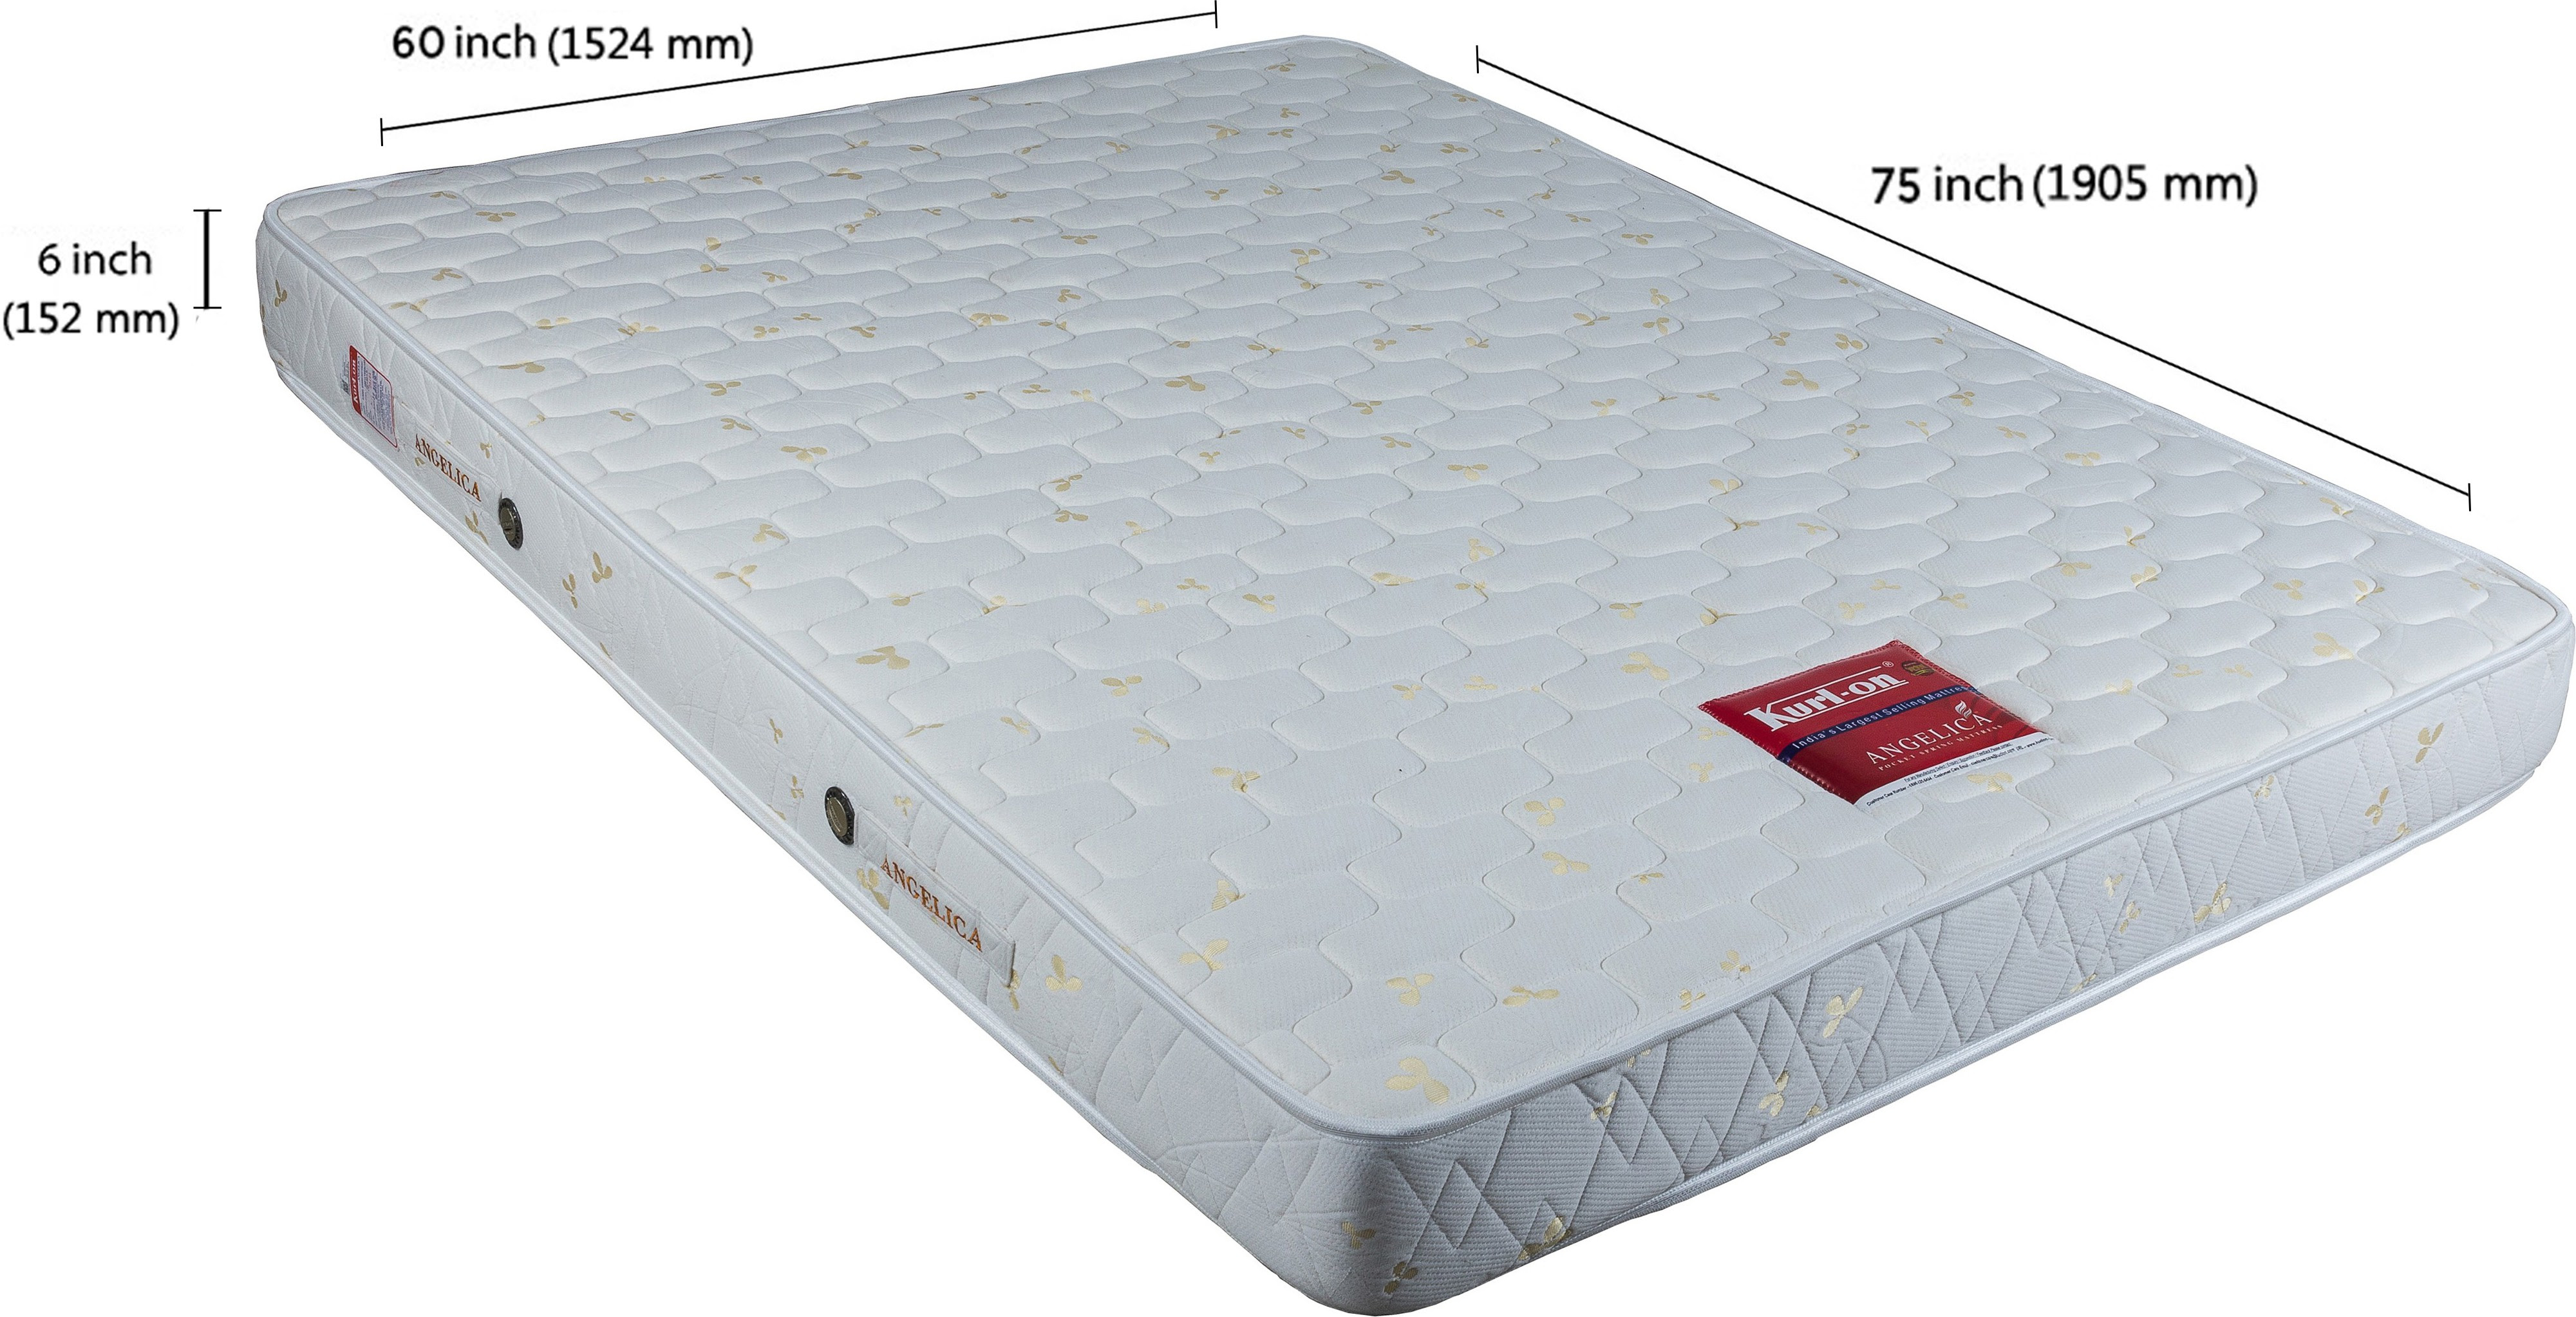 kurlon mattress csd price